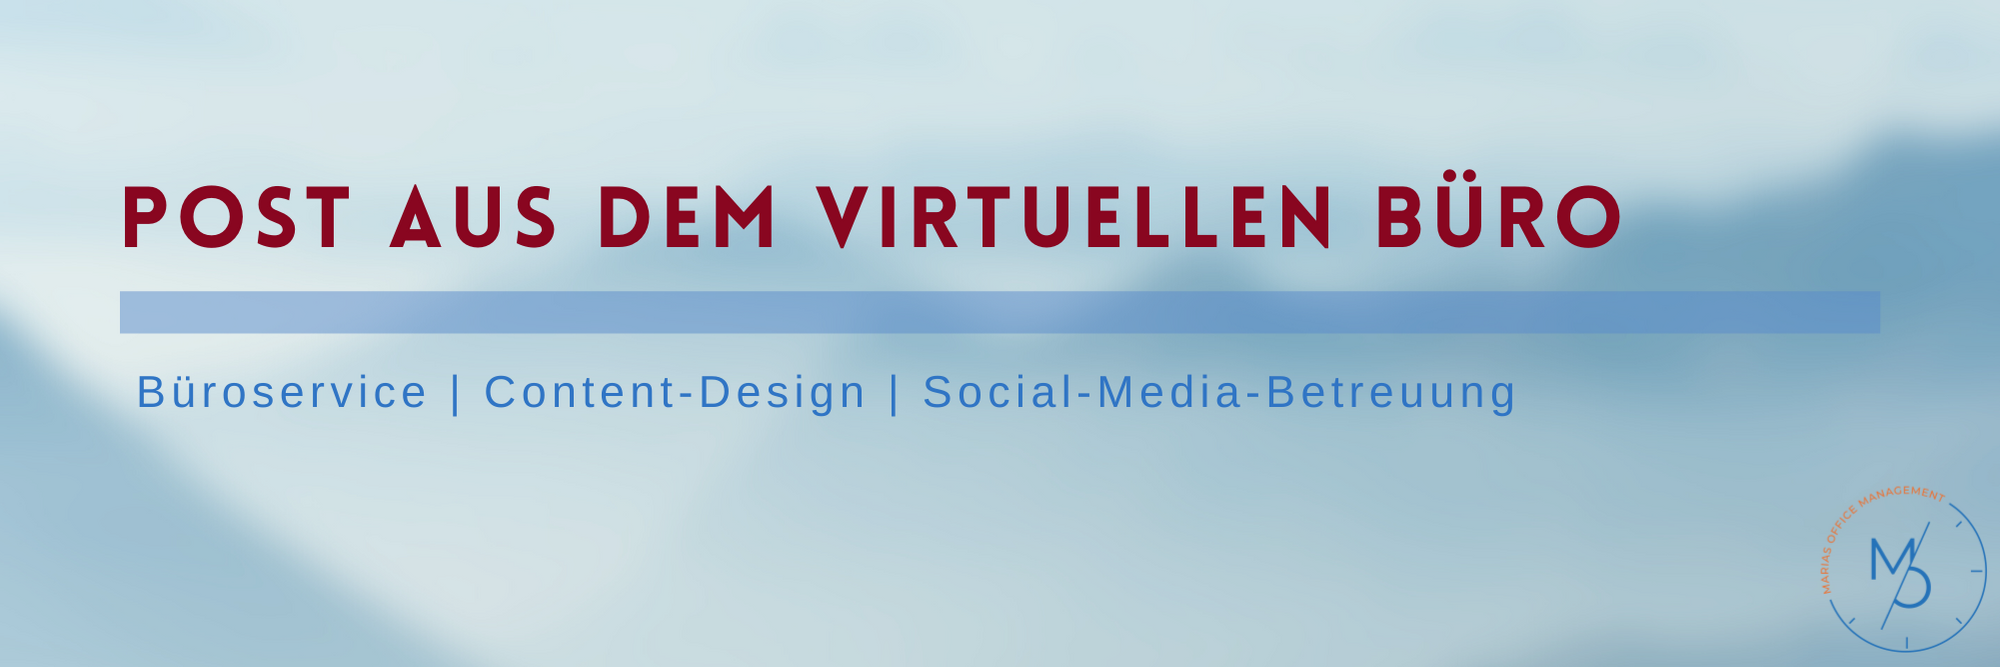 verschwommener Hintergrund in verschiedenen Blautönen / Text: Post aus dem virtuellen Büro - Büroservice - Content-Design - Social-Media-Betreuung / rechts unten kreisrundes Logo von Marias Office-Management